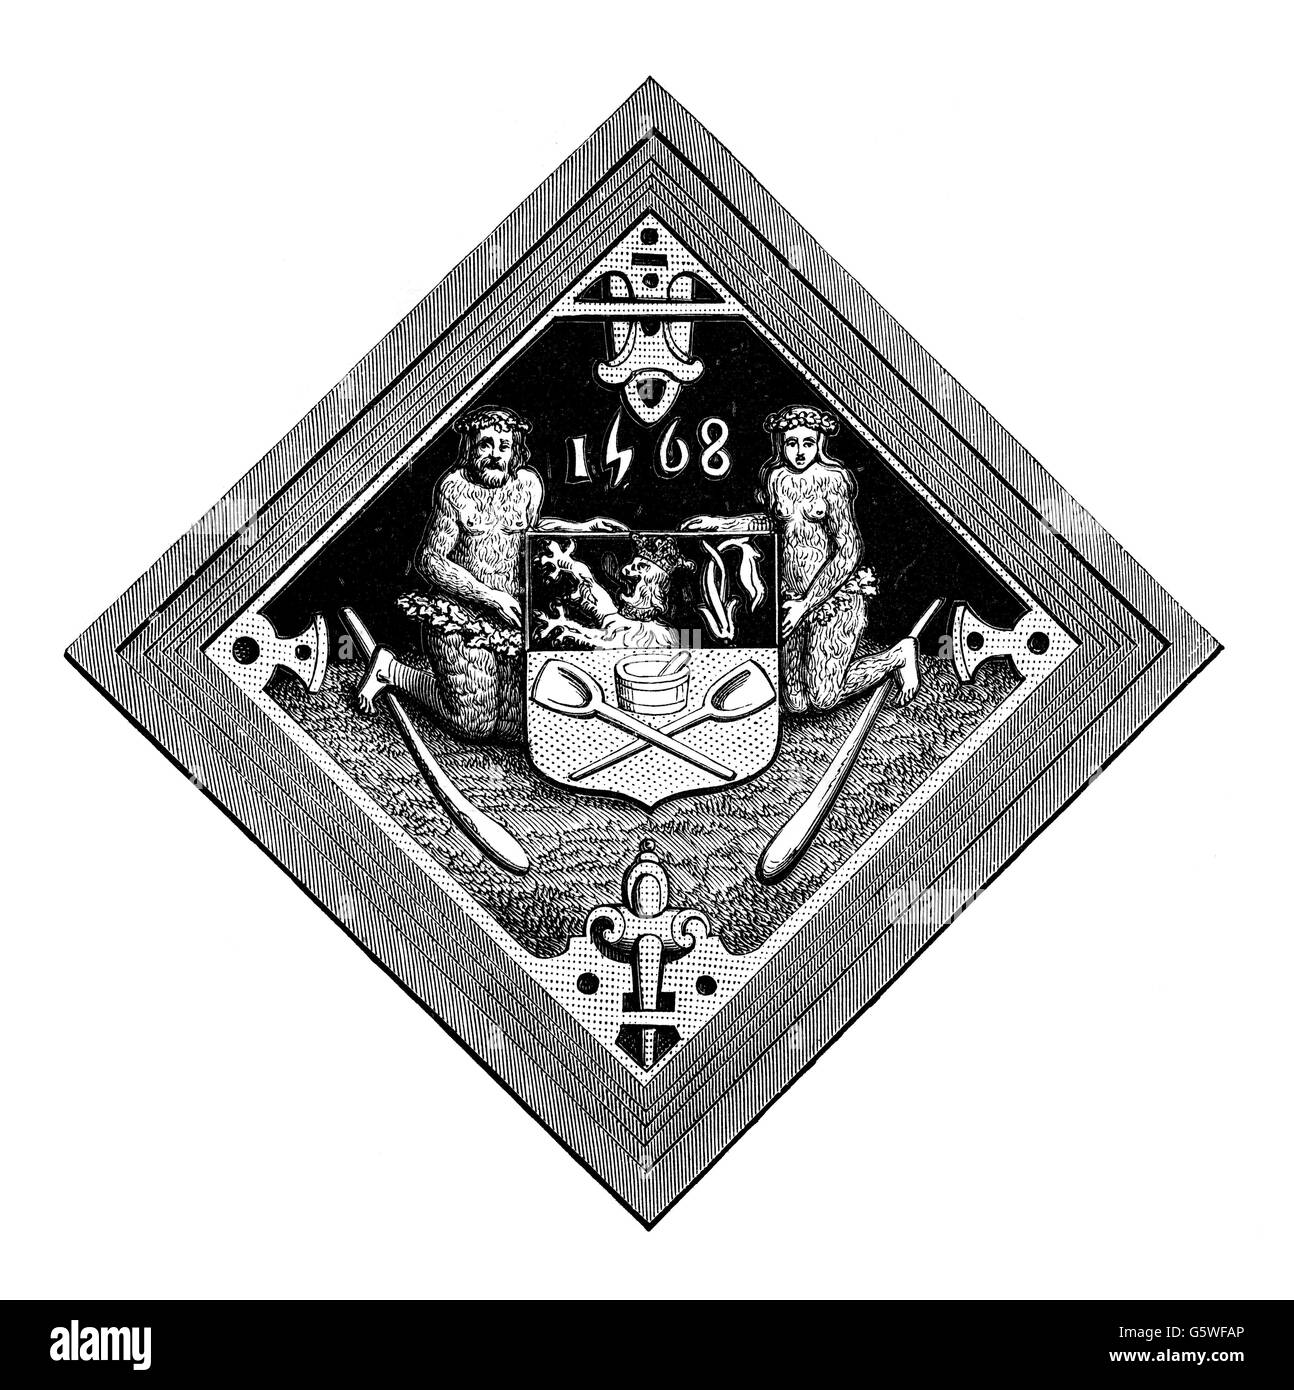 Araldica, guild simboli, measurerers mais di Gand, 1568, artista del diritto d'autore non deve essere cancellata Foto Stock